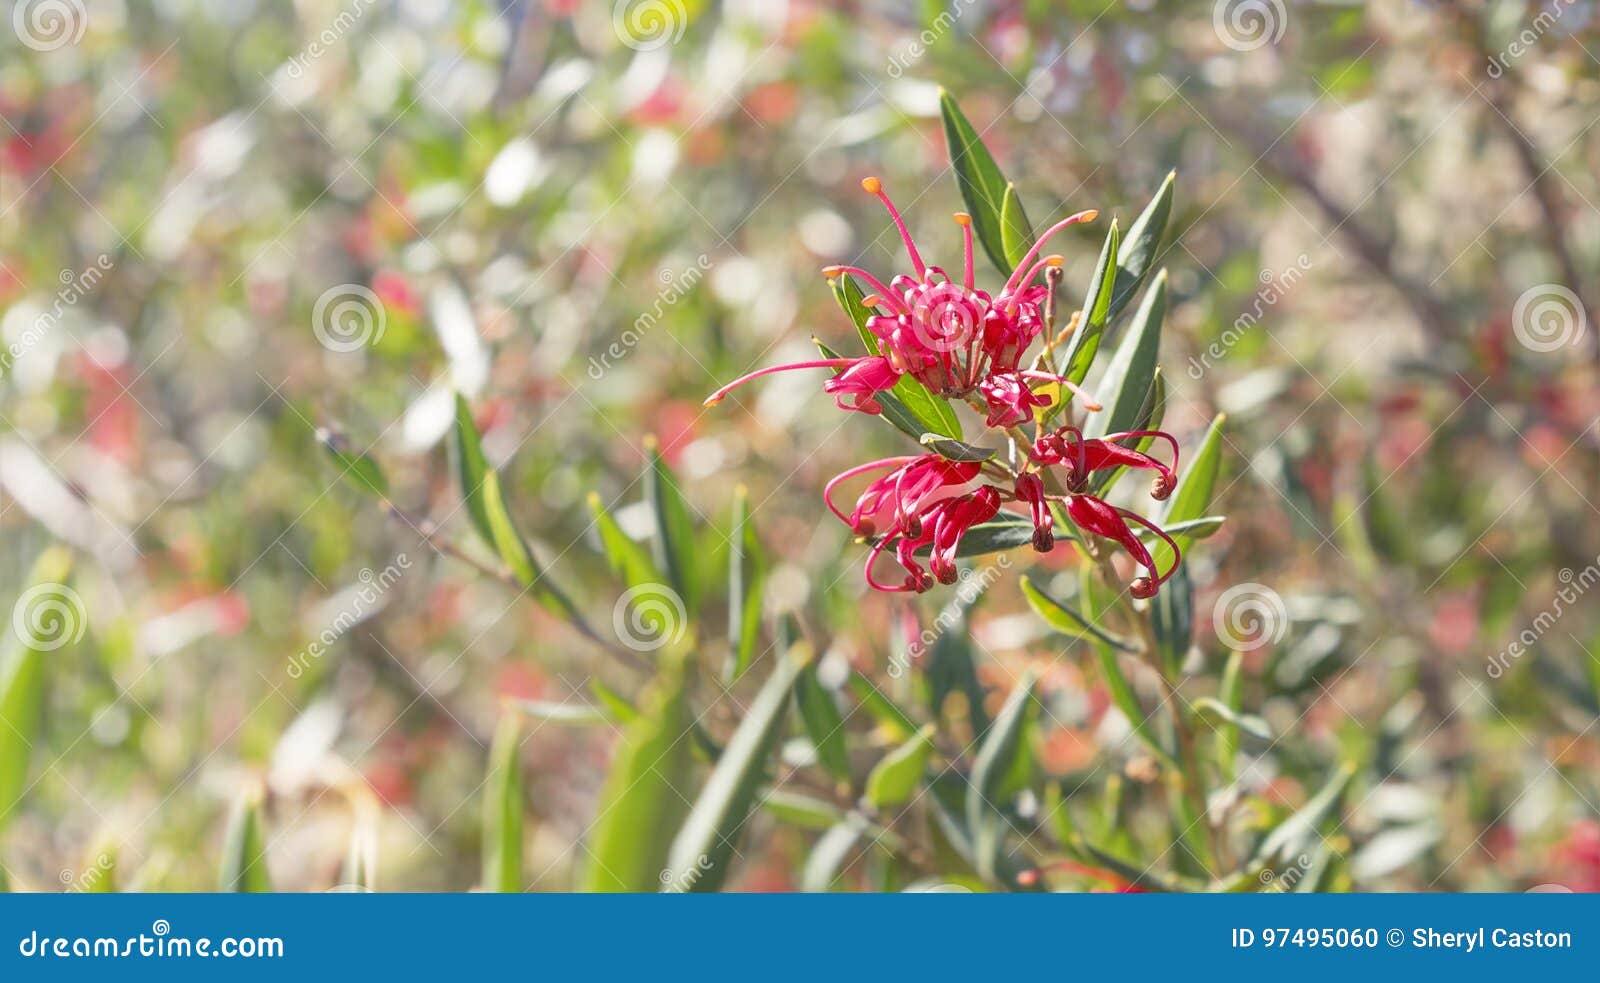 australian wildflower grevillea splendour